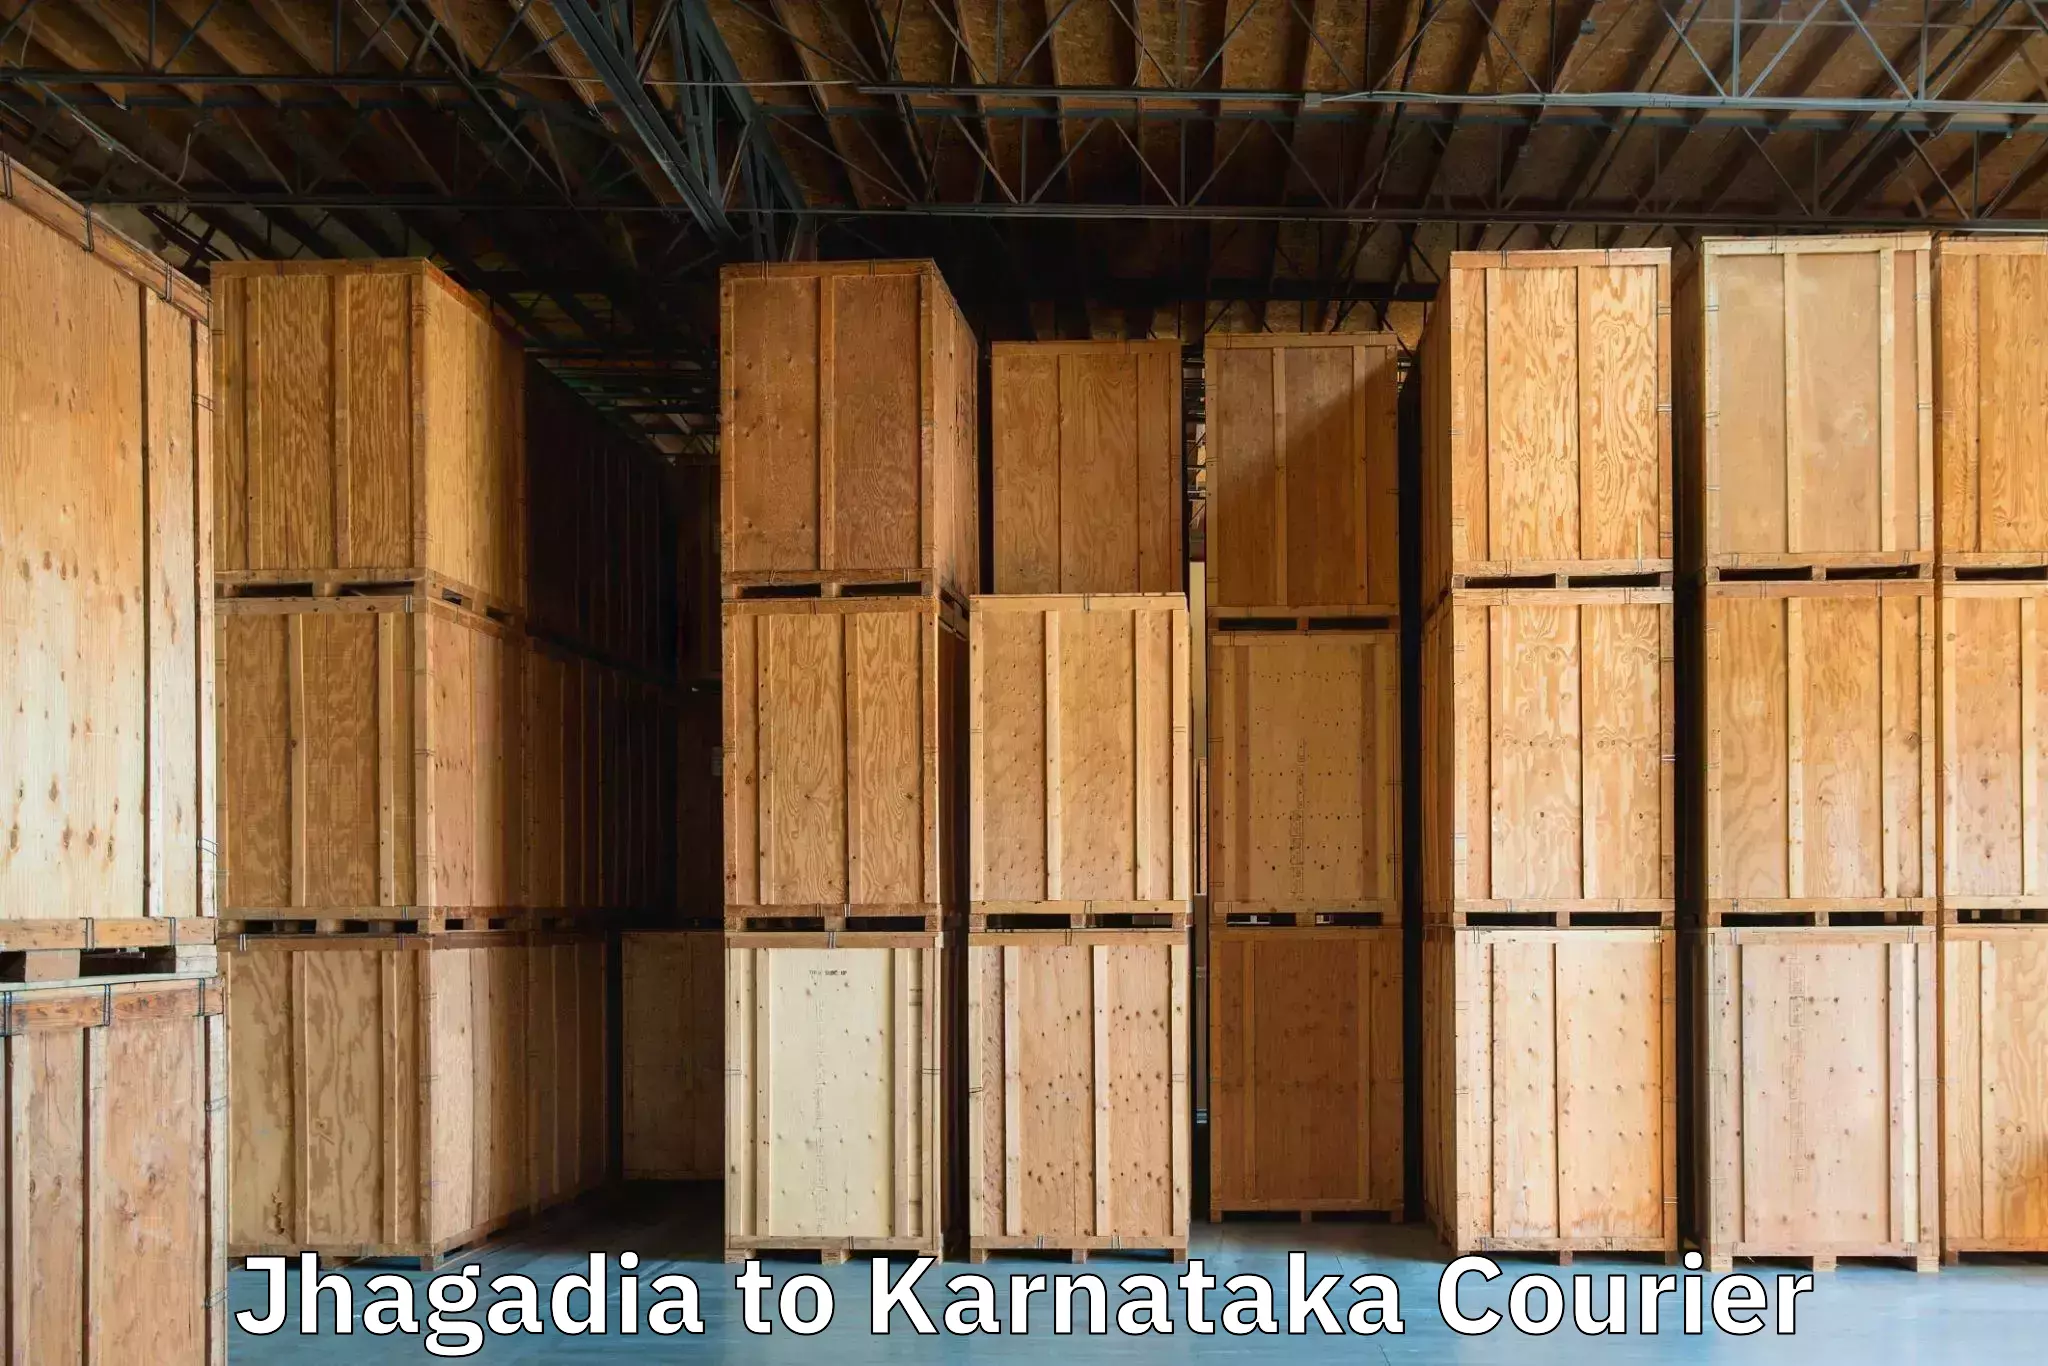 Baggage relocation service Jhagadia to Kanakapura